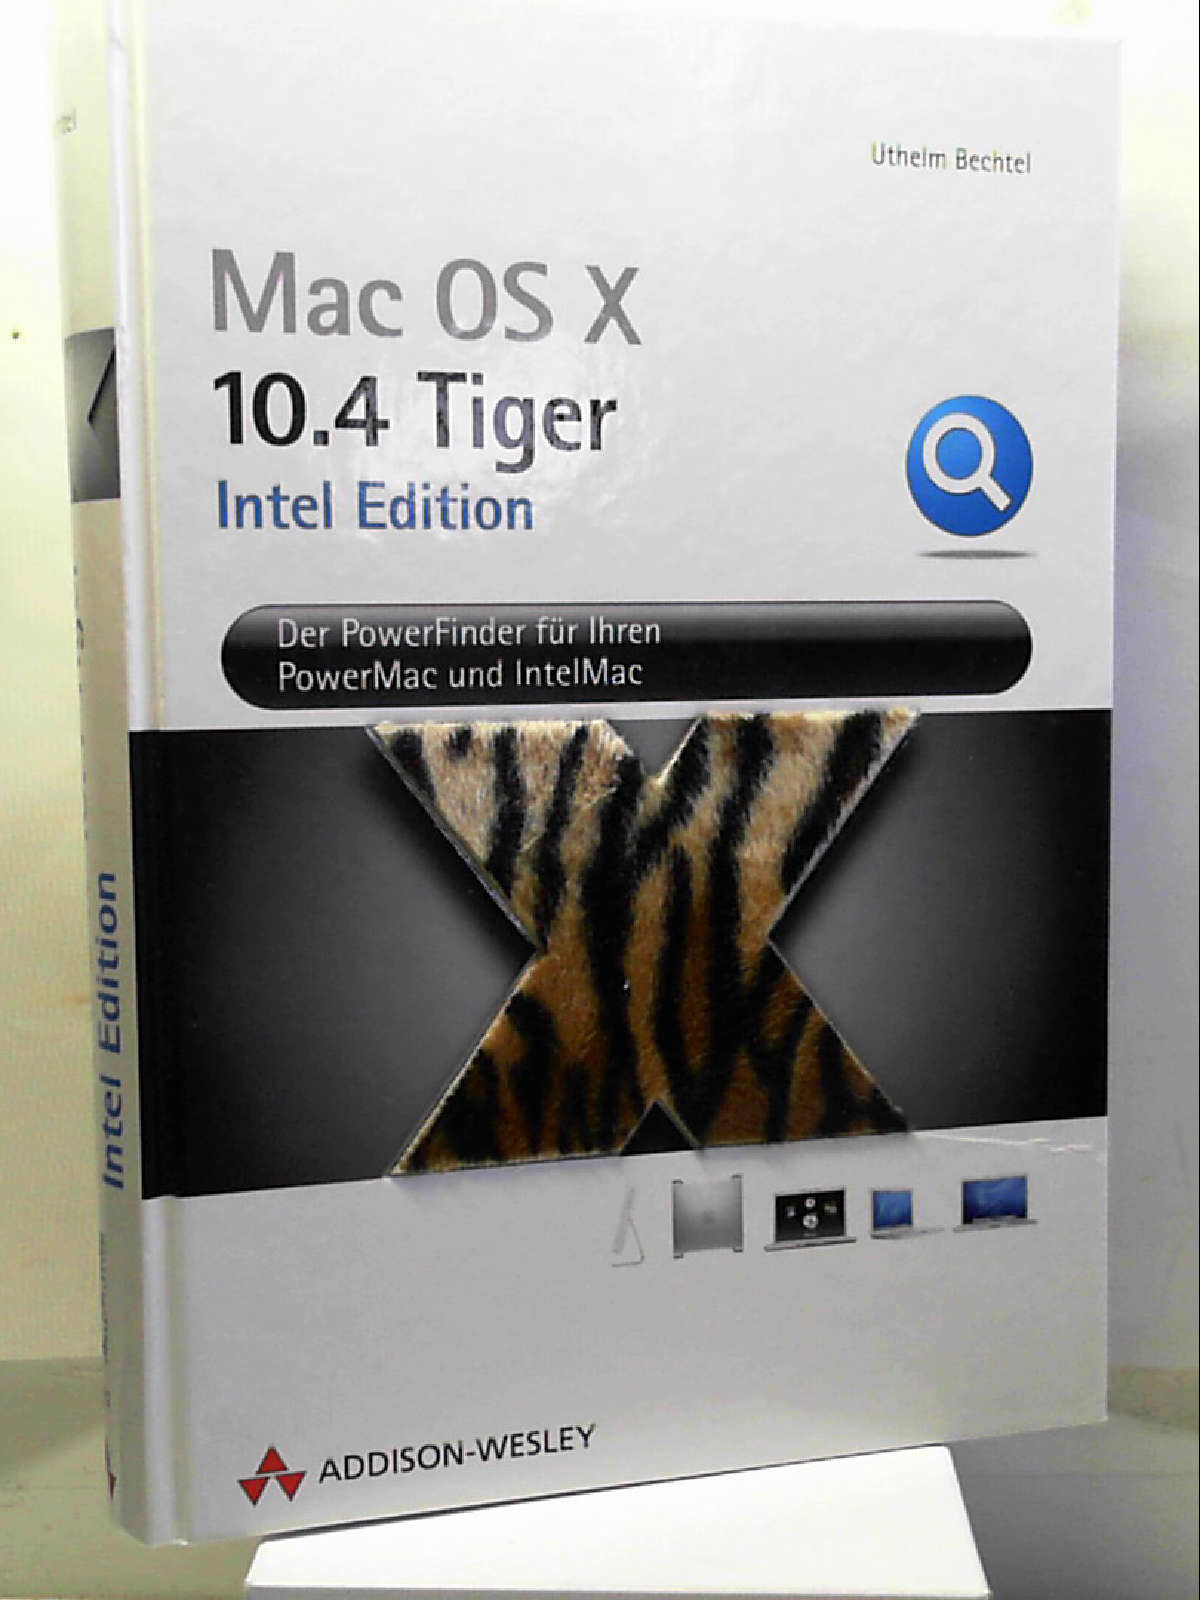 Apple Mac OS X 10.4 Tiger. Intel Edition. Der Powerfinder für Ihren PowerMac und IntelMac - Uthelm Bechtel